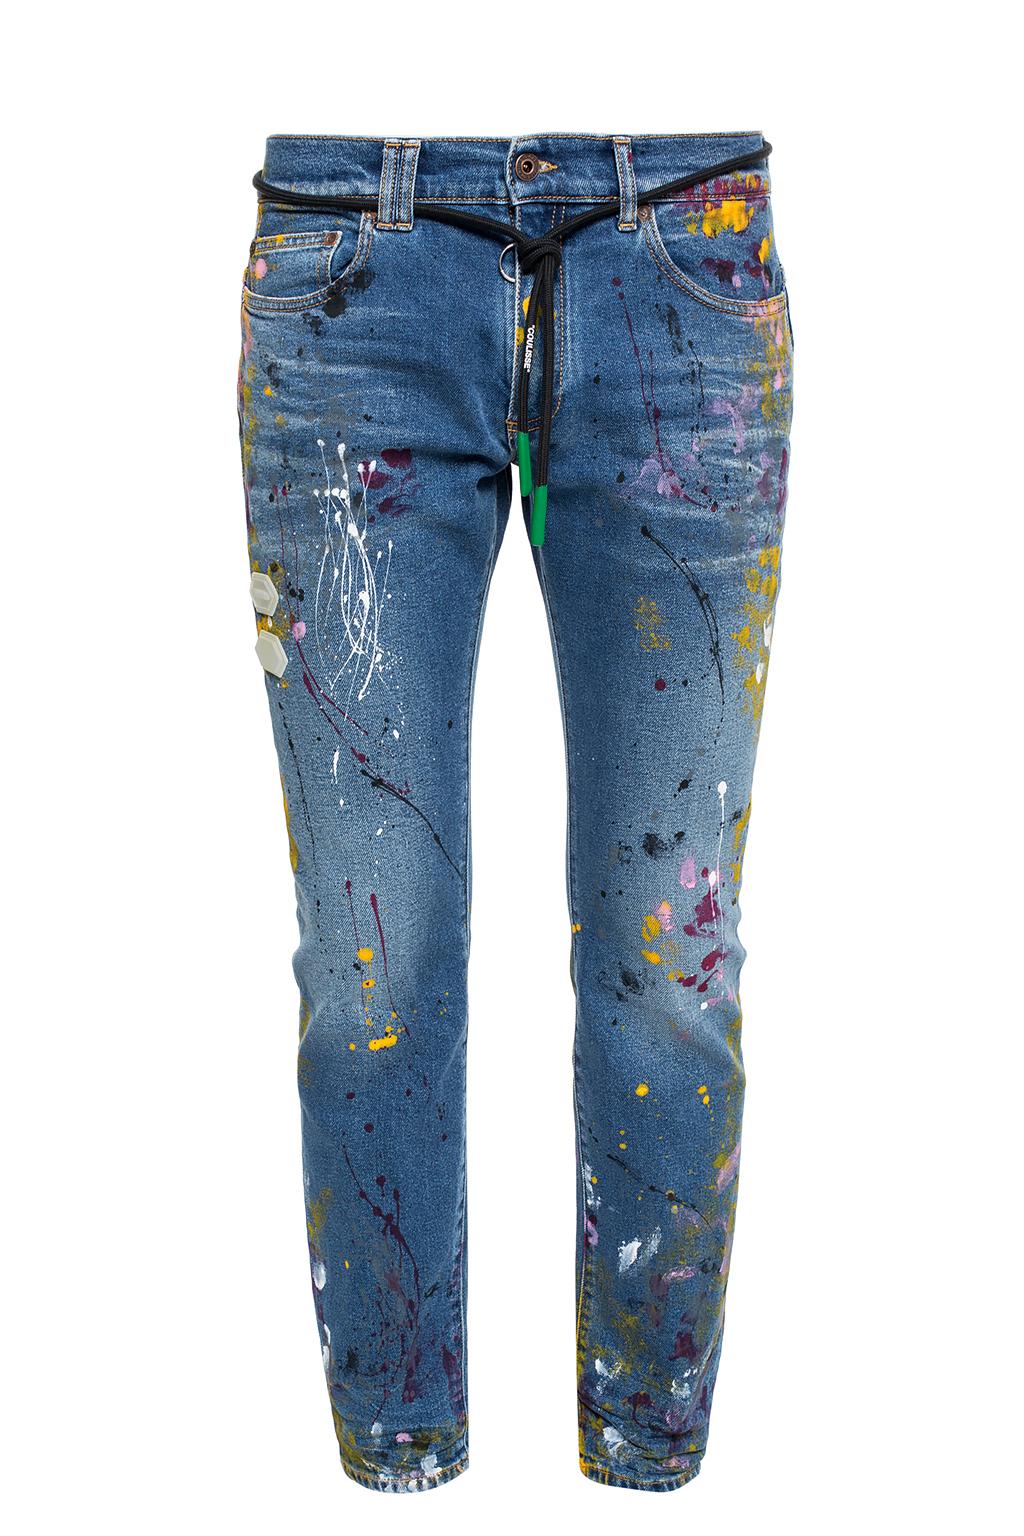 off white paint splatter jeans